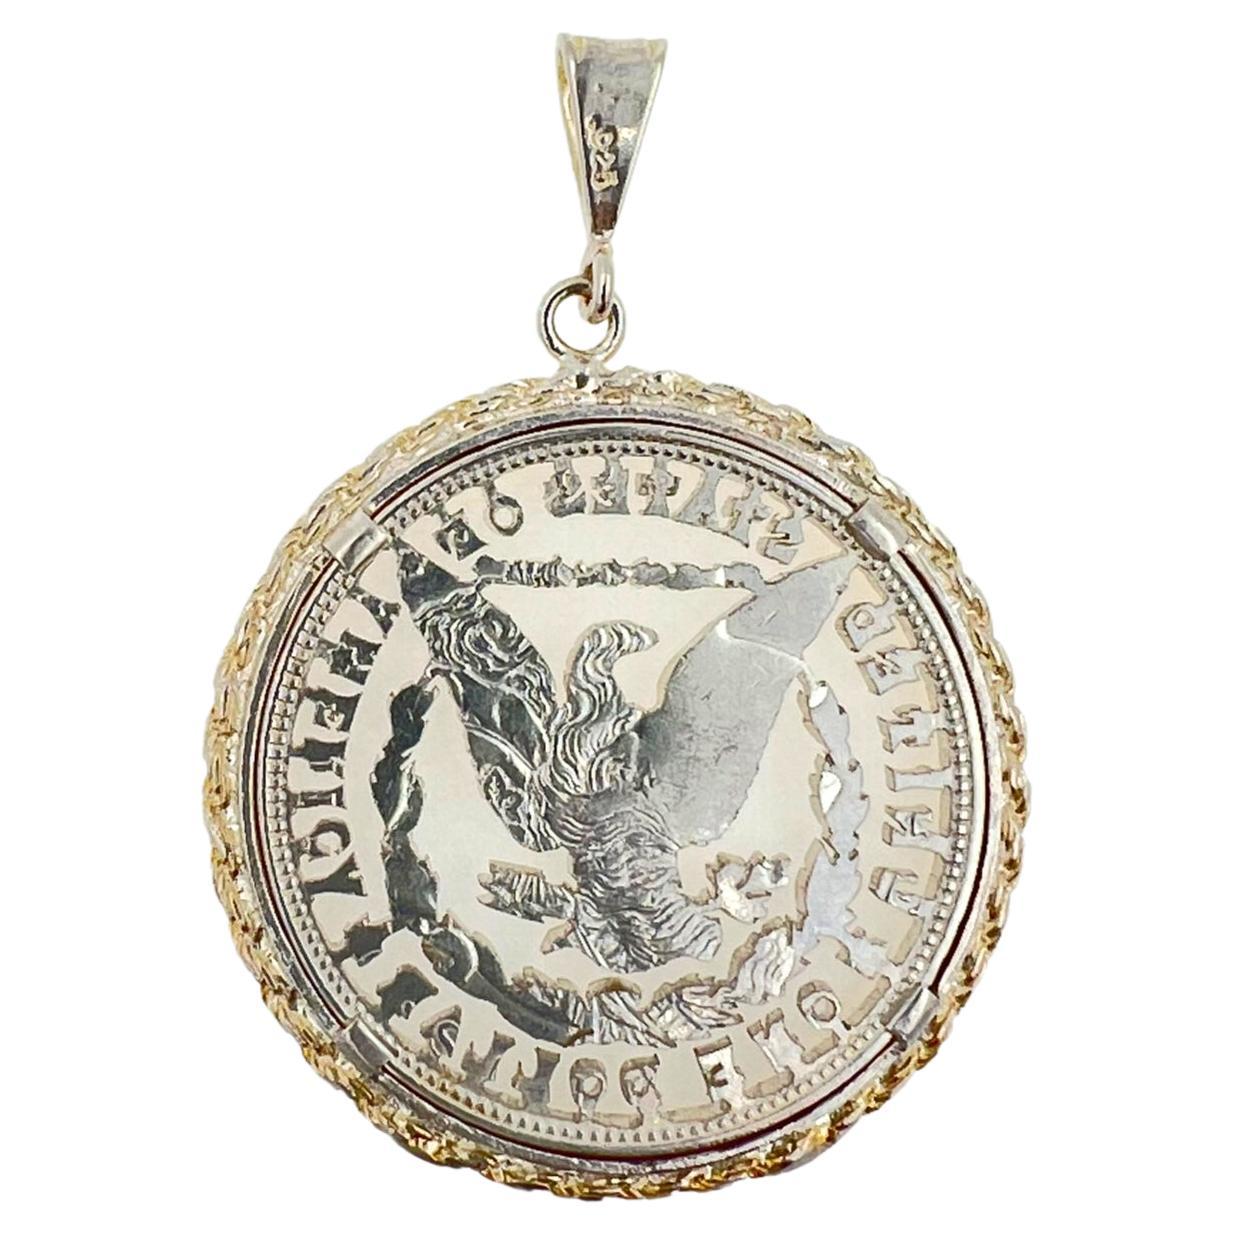 925 Massiv Sterling Silber 
45 mm Durchmesser der Münzen
Echte Vintage-Münze (geschnitzt) 
Nur Anhänger
Handgefertigt & Einzigartig
Großer Wert